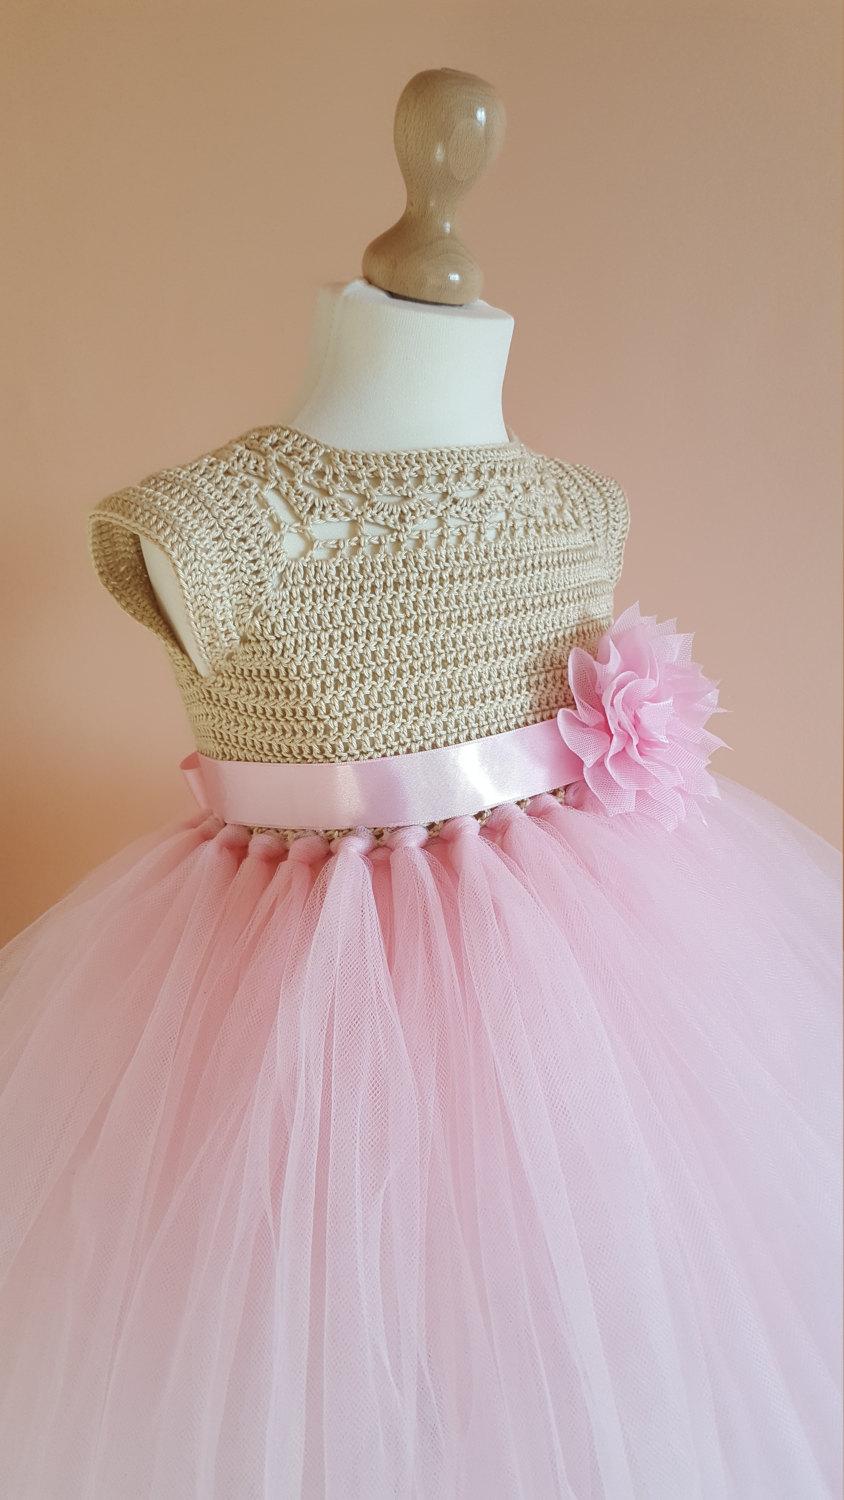 Mariage - tutu dress, crochet dress, crochet yoke, princess dress, bridesmaid dress,gold dress, baby dress, toddler dress, baptism dress, flower girl